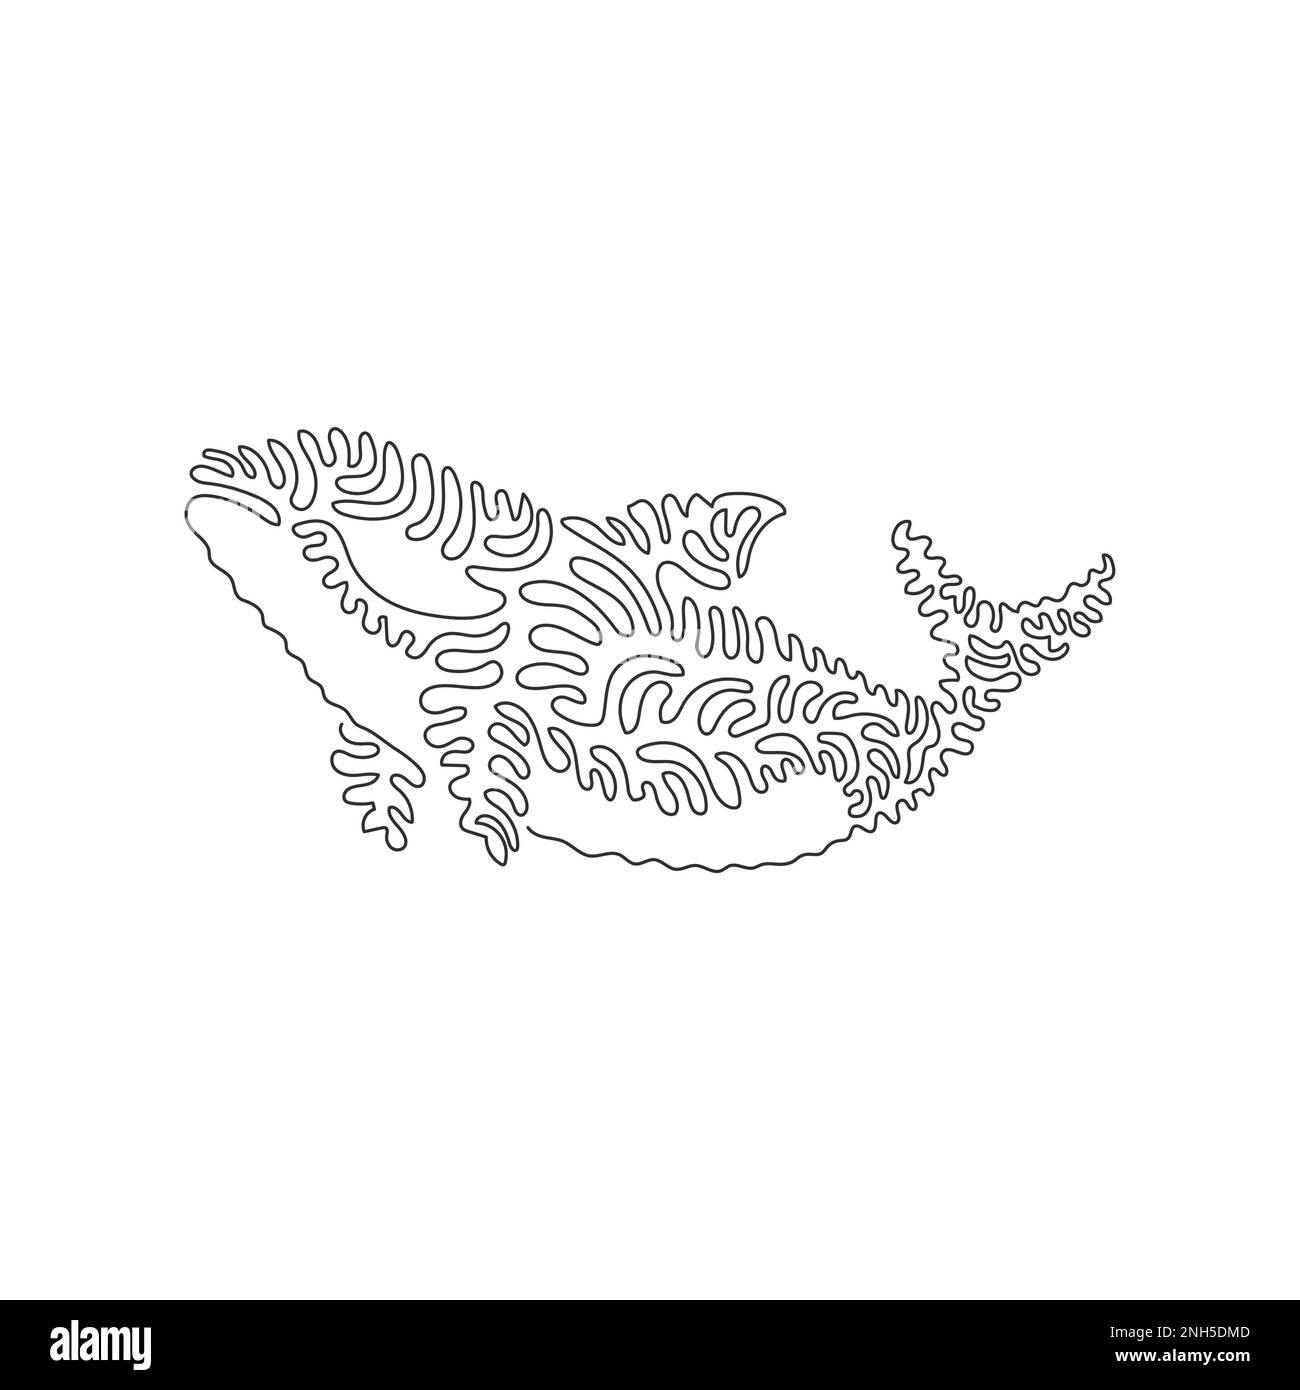 Singolo disegno di una linea di orca come il più potente nell'arte astratta dell'oceano Disegno grafico a linea continua illustrazione vettoriale di orca selvaggio Illustrazione Vettoriale